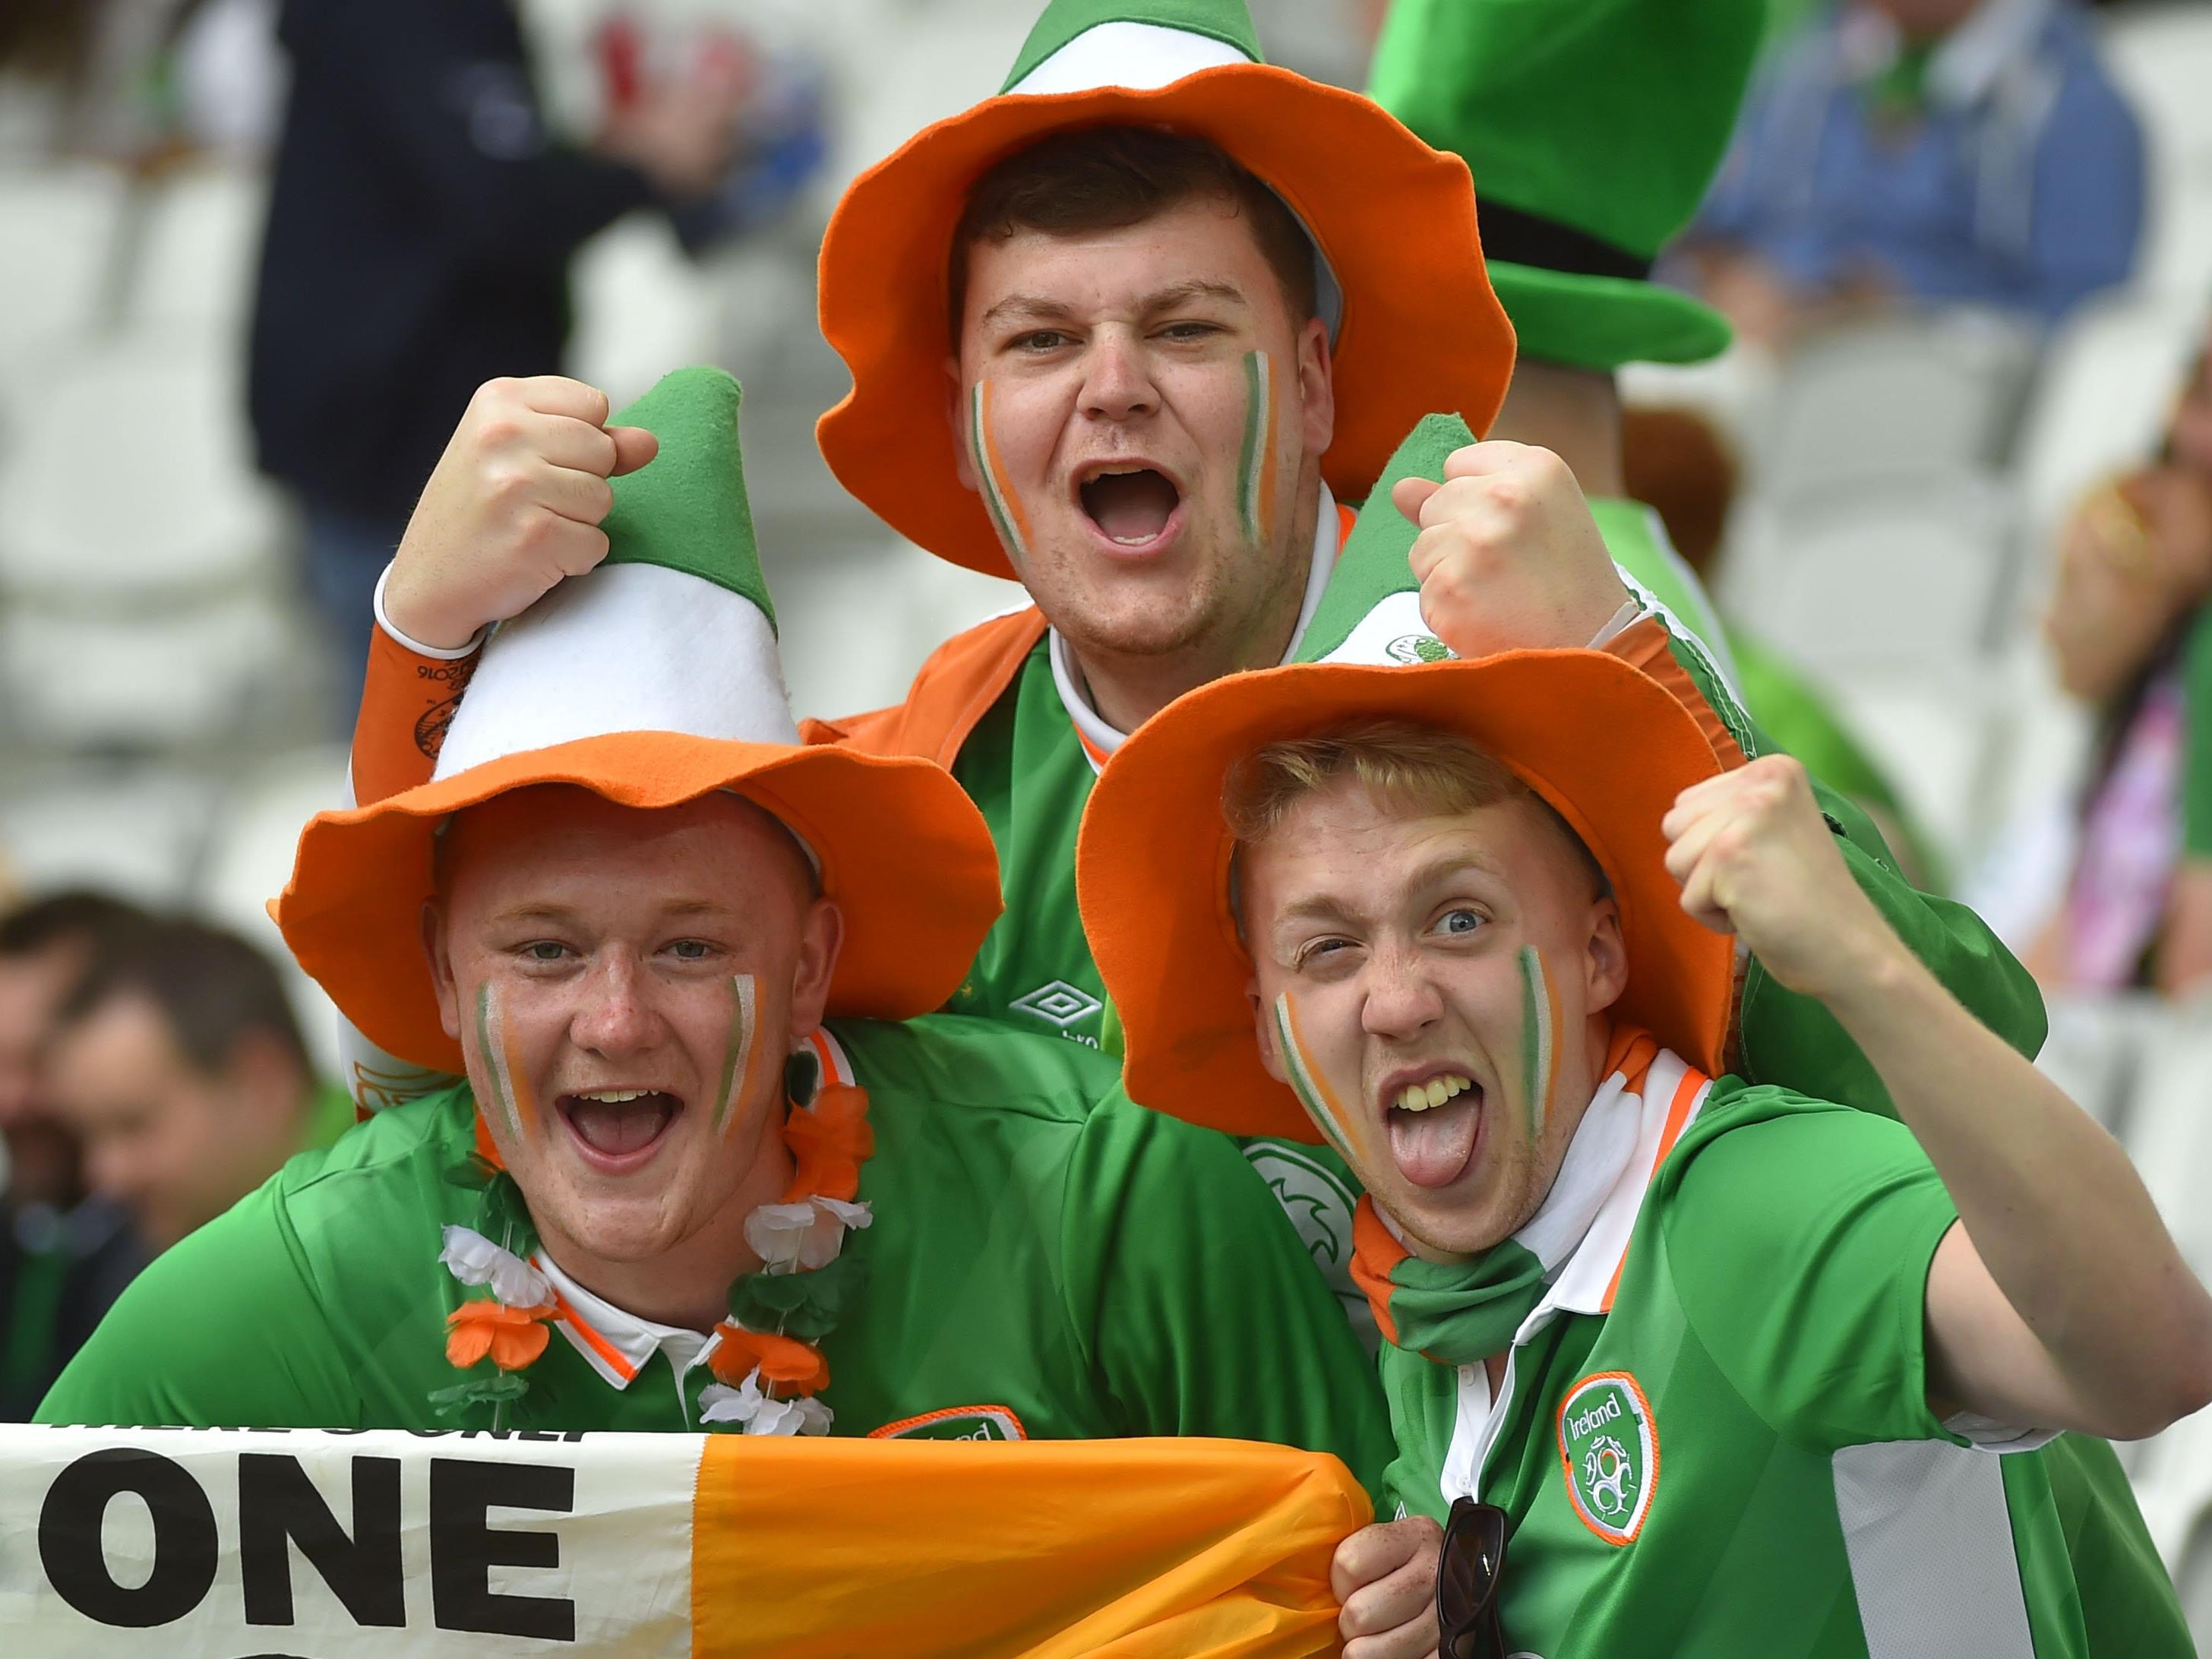 Verrückt und sympathisch: Die irischen Fußballfans.